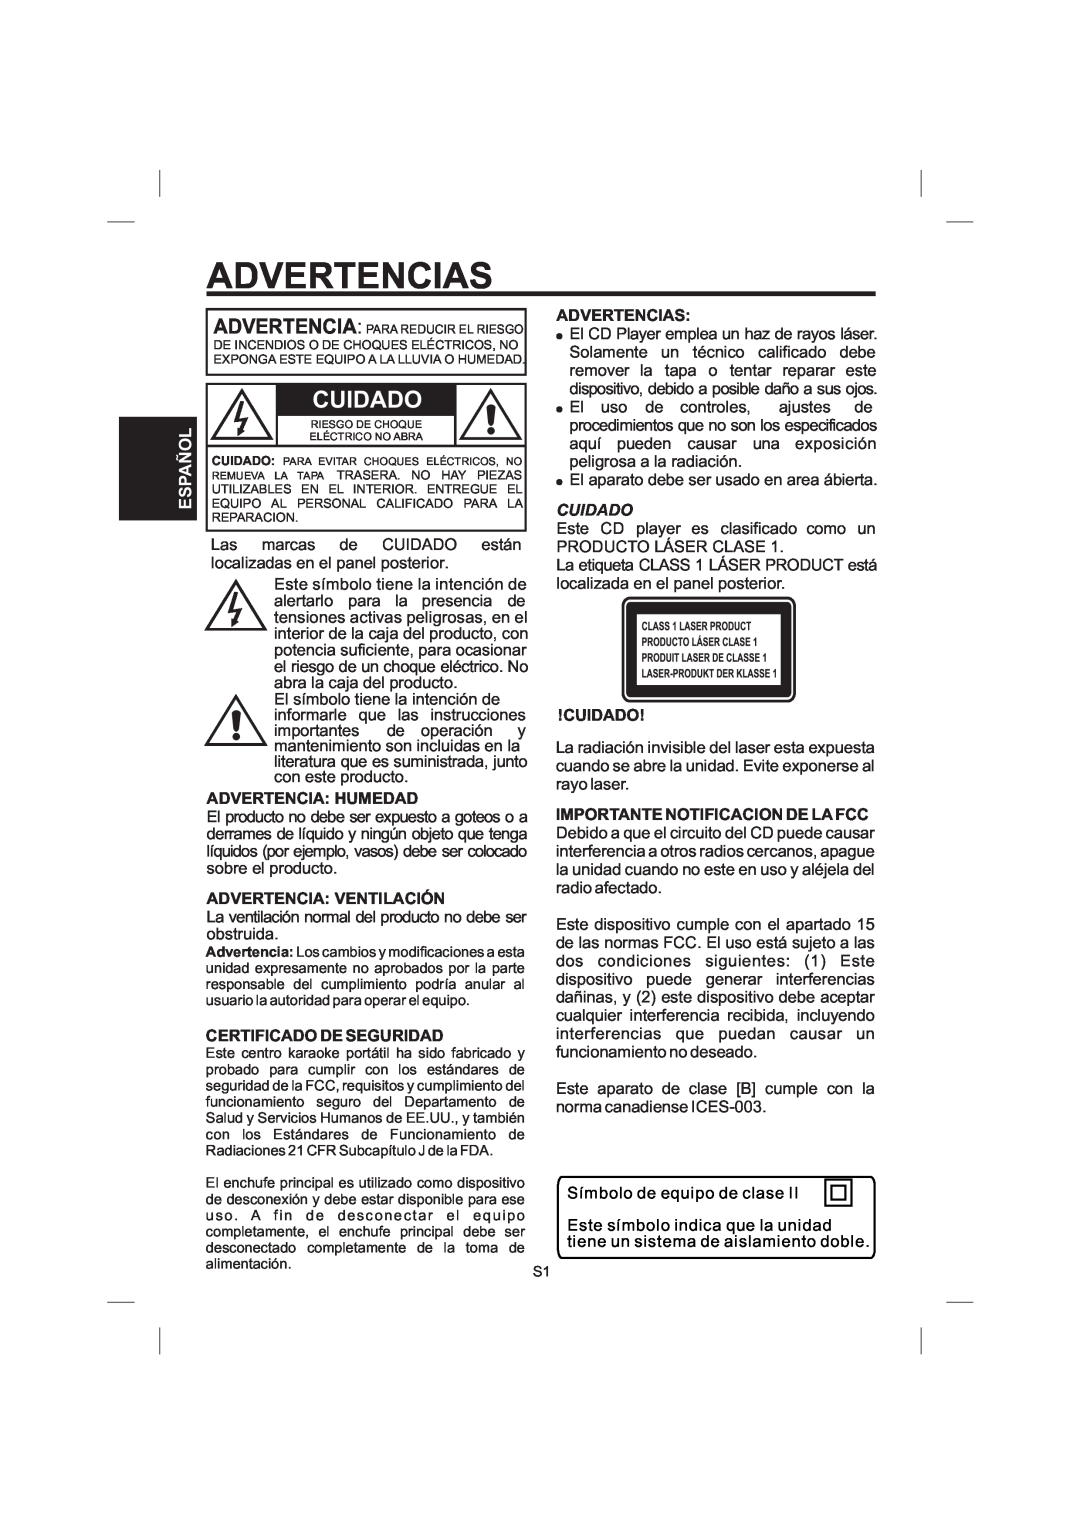 The Singing Machine STVG-559 Advertencias, Advertencia Humedad, Advertencia Ventilación, Certificado De Seguridad, Cuidado 